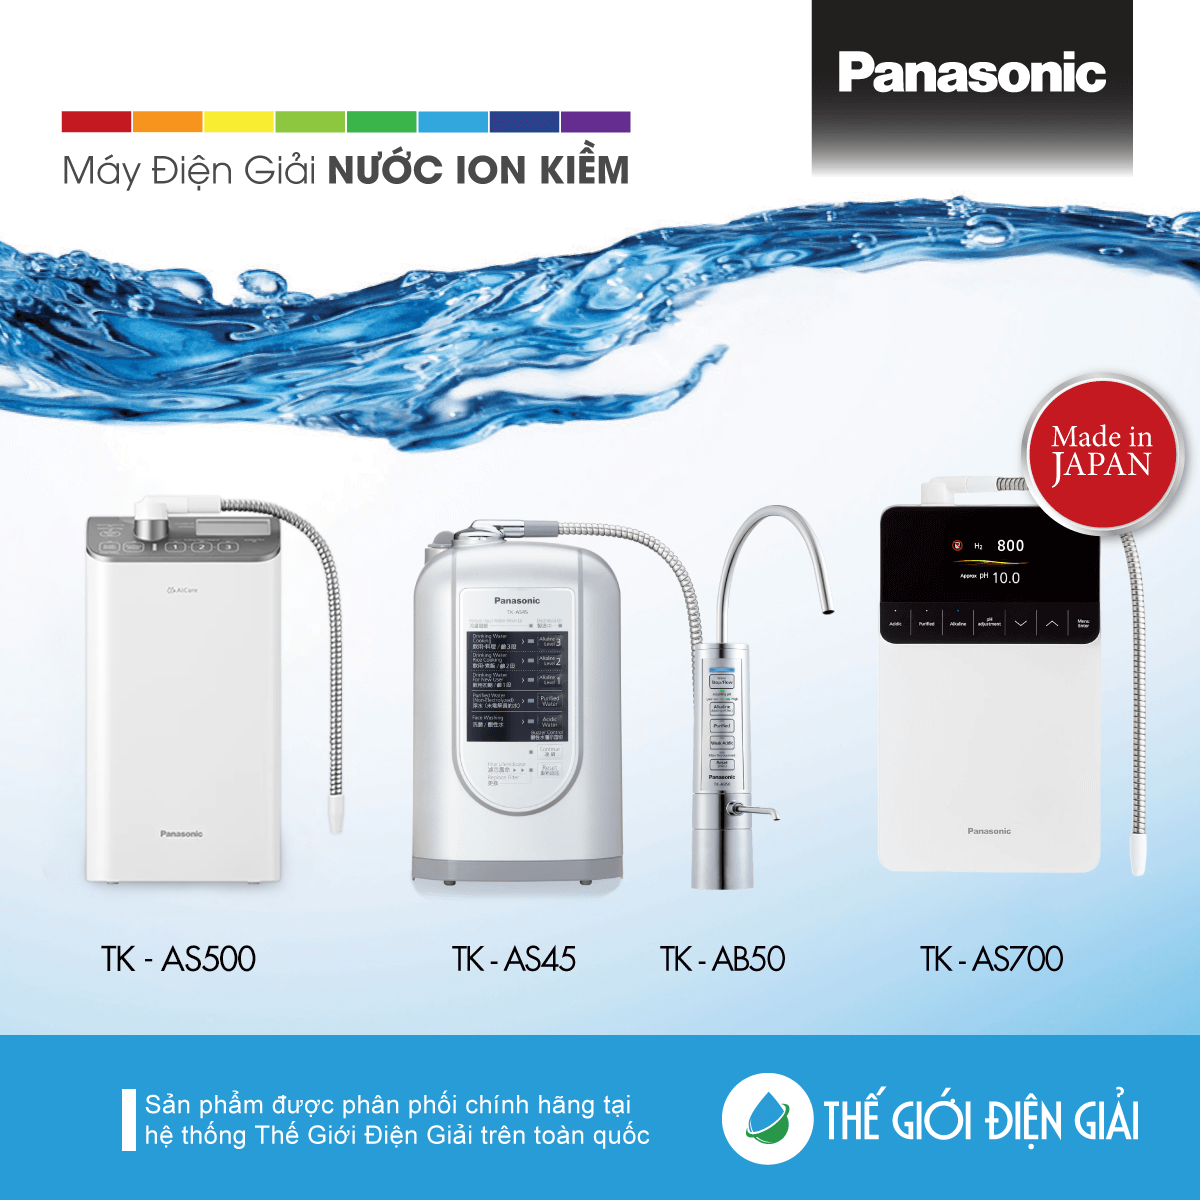 Máy lọc nước ion kiềm Panasonic giá bao nhiêu và có tốt không?